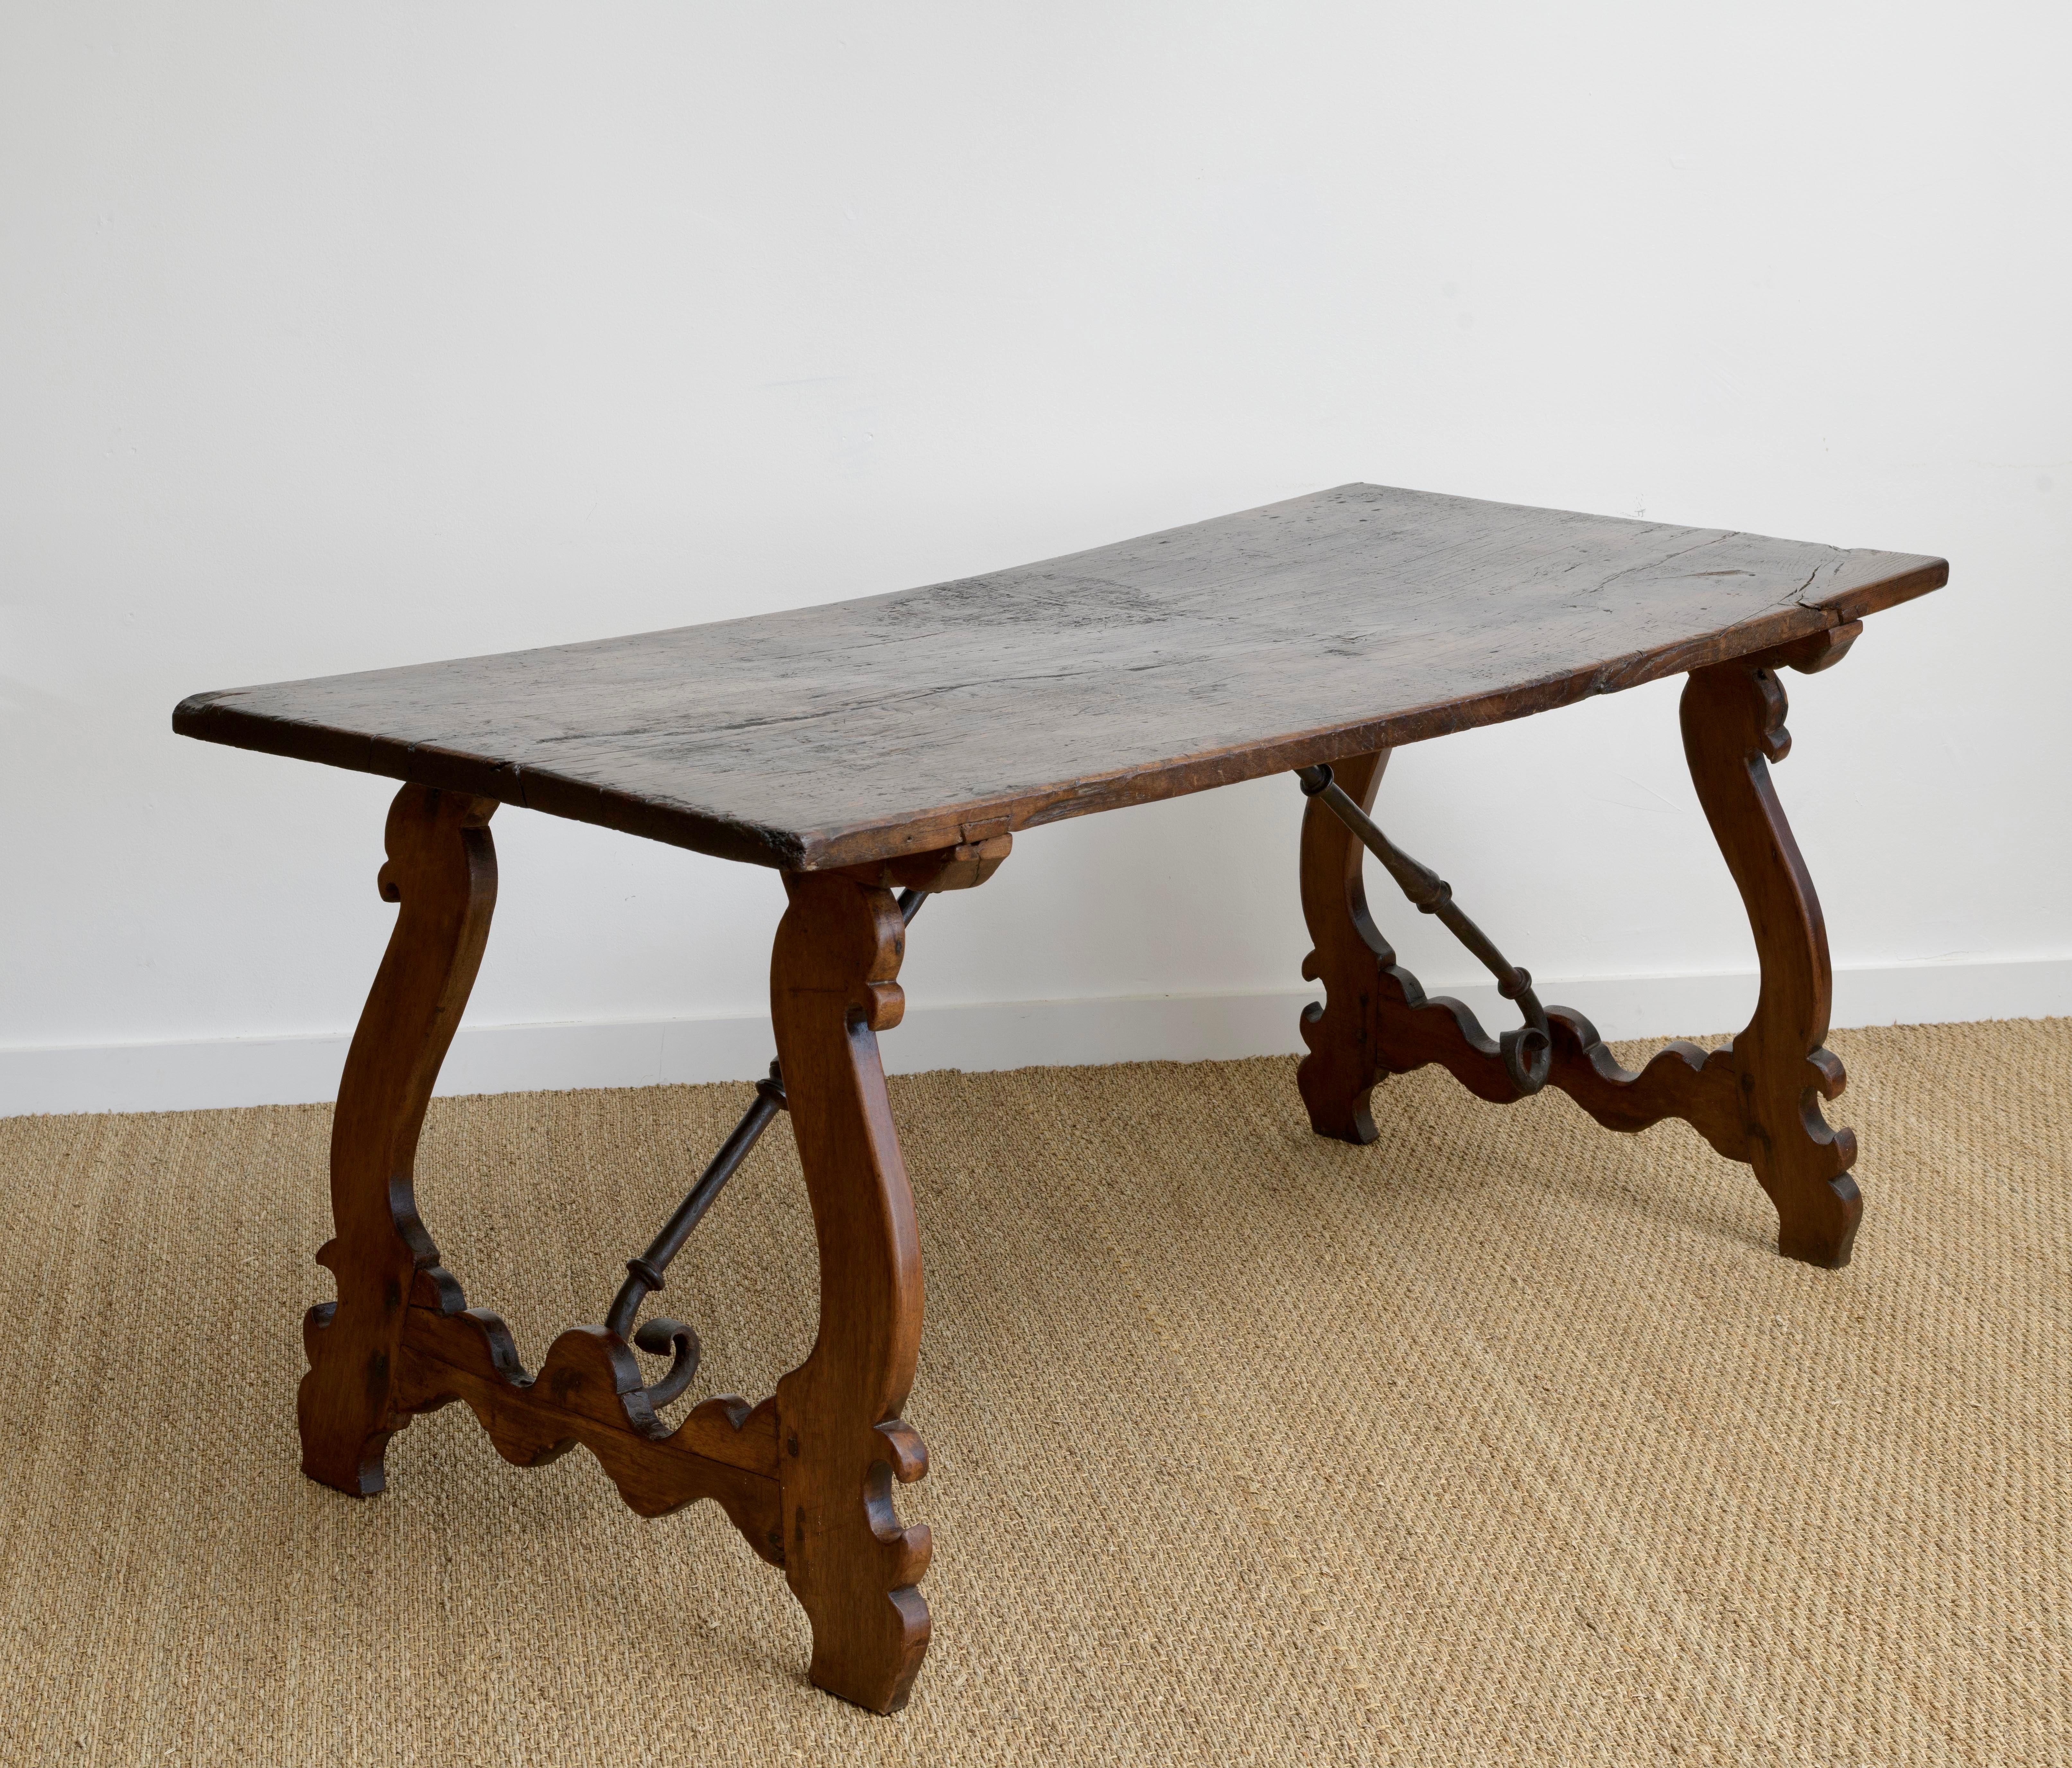 Spanischer Tisch mit Plankenplatte aus dem frühen 18. Jahrhundert, gespreizte Lyra-Beine, mit geschmiedeten Eisenträgern  Top hat wunderbare Patina im Einklang mit dem täglichen Gebrauch von seinem Alter.   